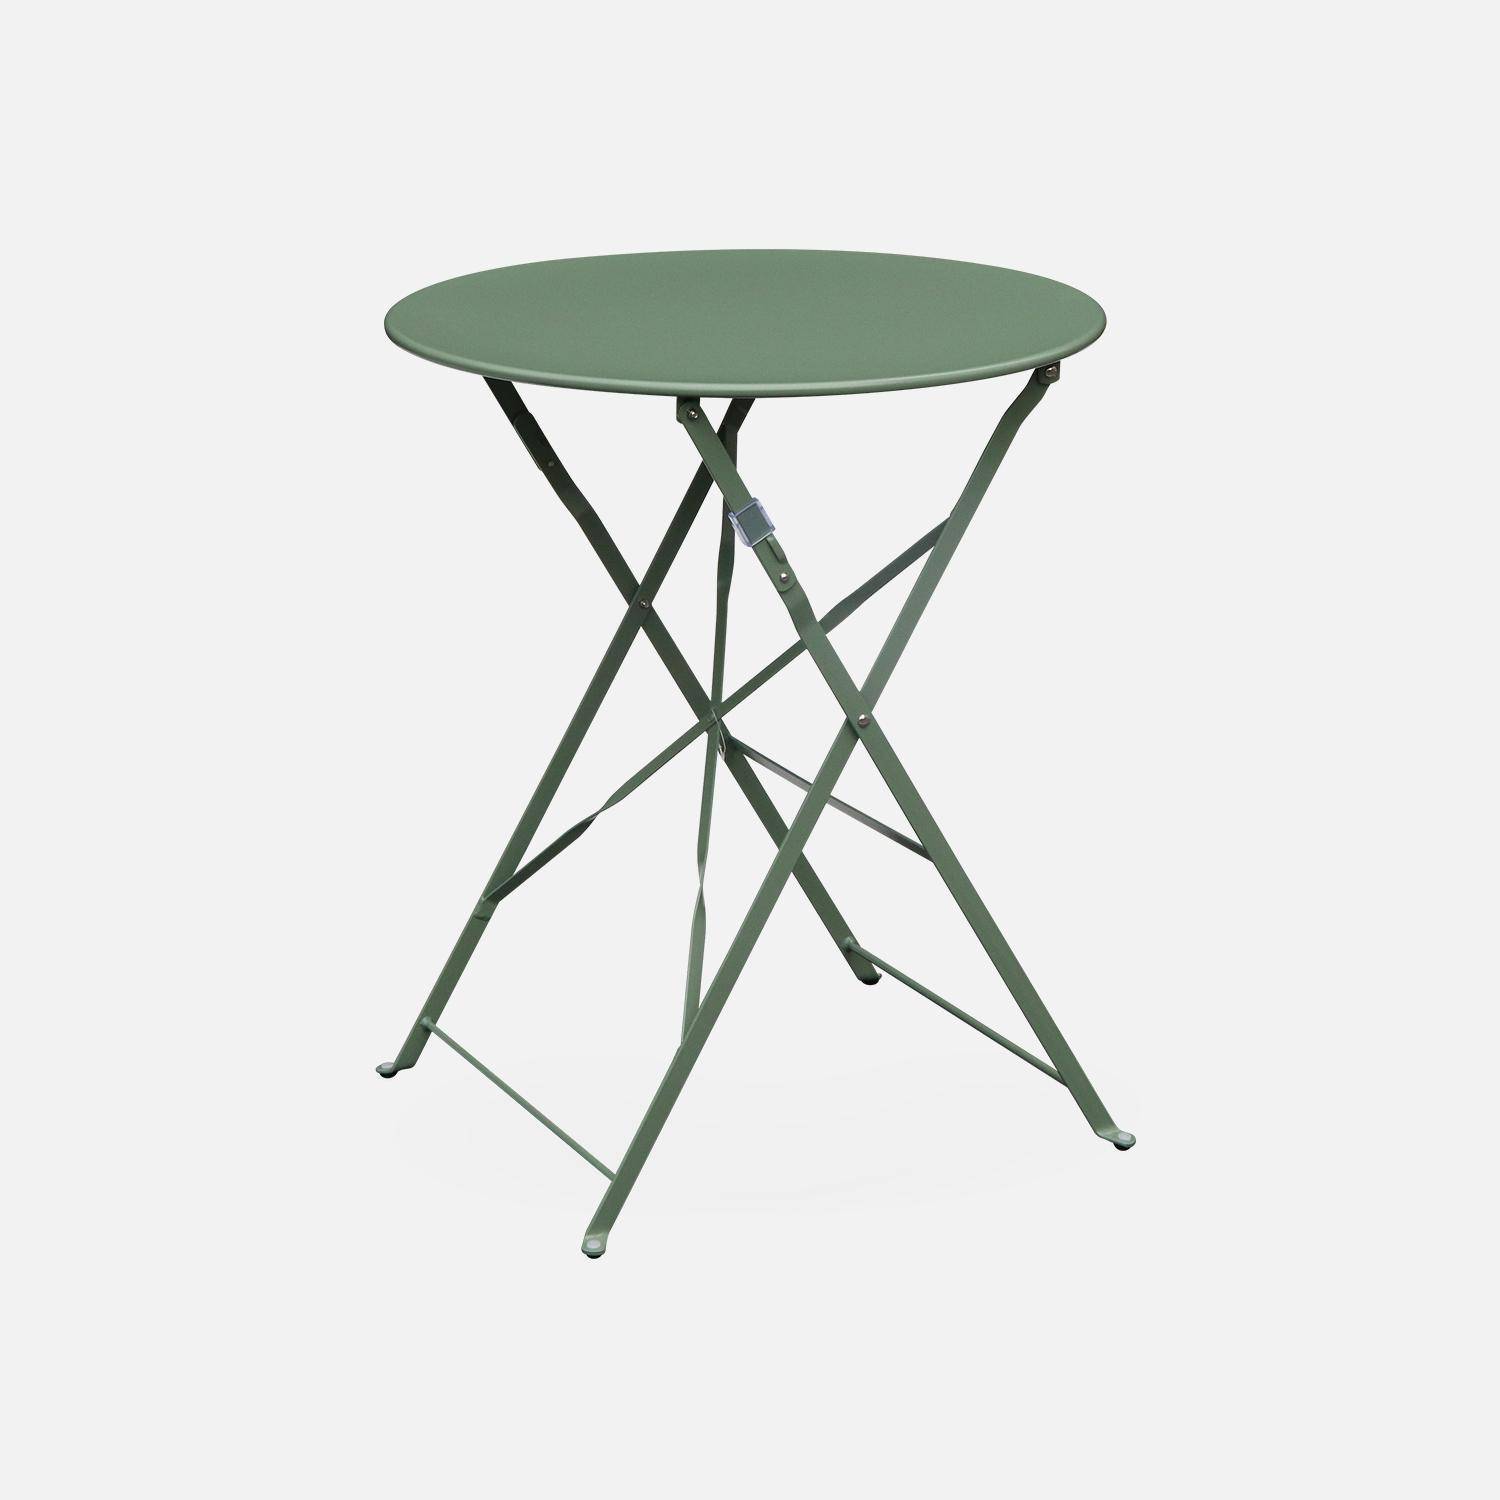 Klappbarer Bistro-Gartentisch - Emilia rund Grüngrau - Runder Tisch Ø60cm aus pulverbeschichtetem Stahl Photo1